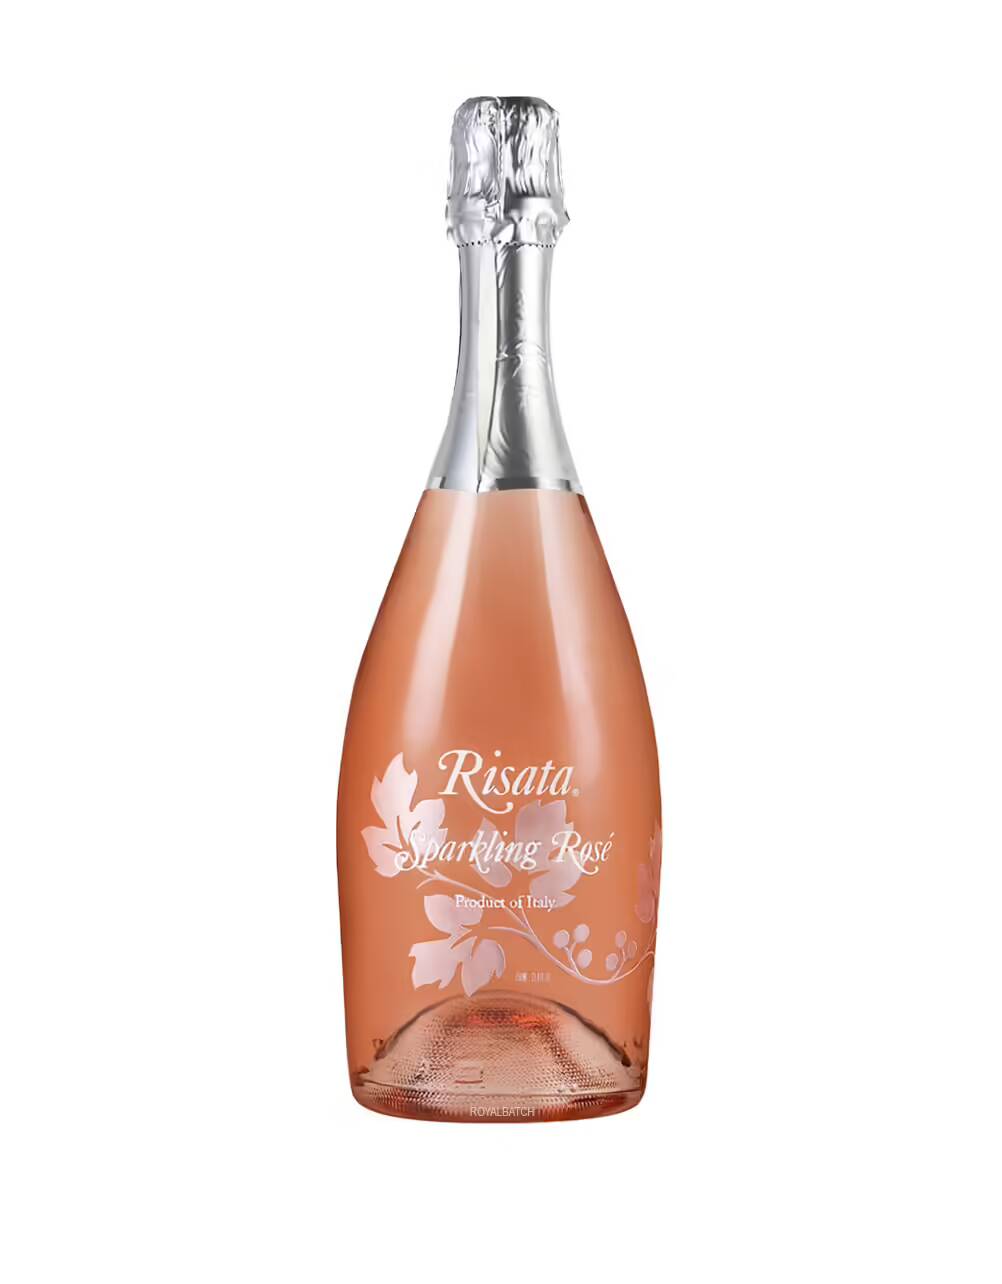 Risata Sparkling Rose Wine